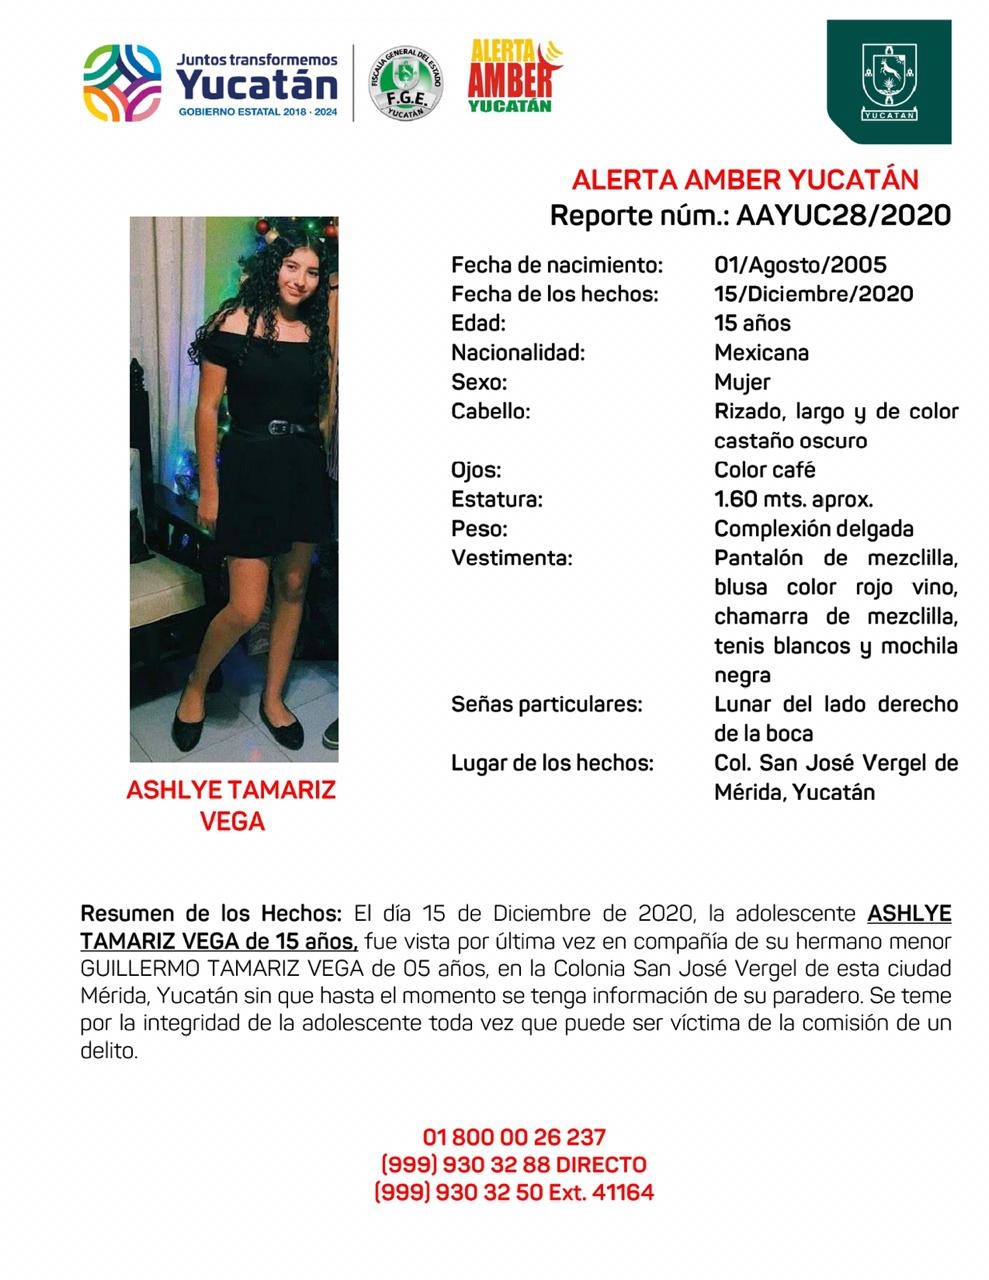 Activan Alerta Amber por adolescente de 15 años desaparecida con su hermanito en Mérida